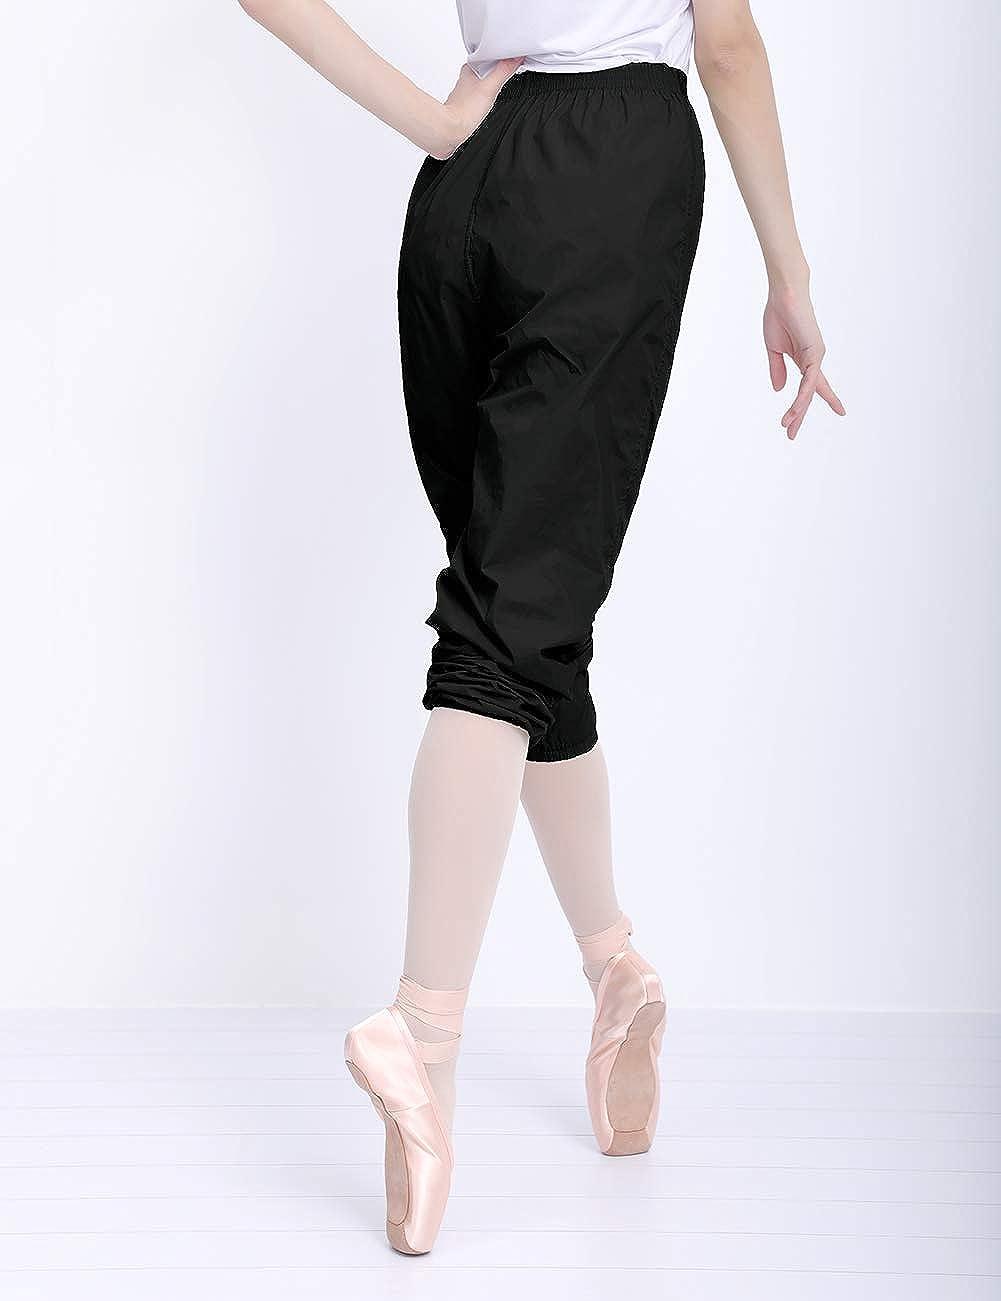  Cuulrite Women's Ripstop Ballet Dance Pants, Black